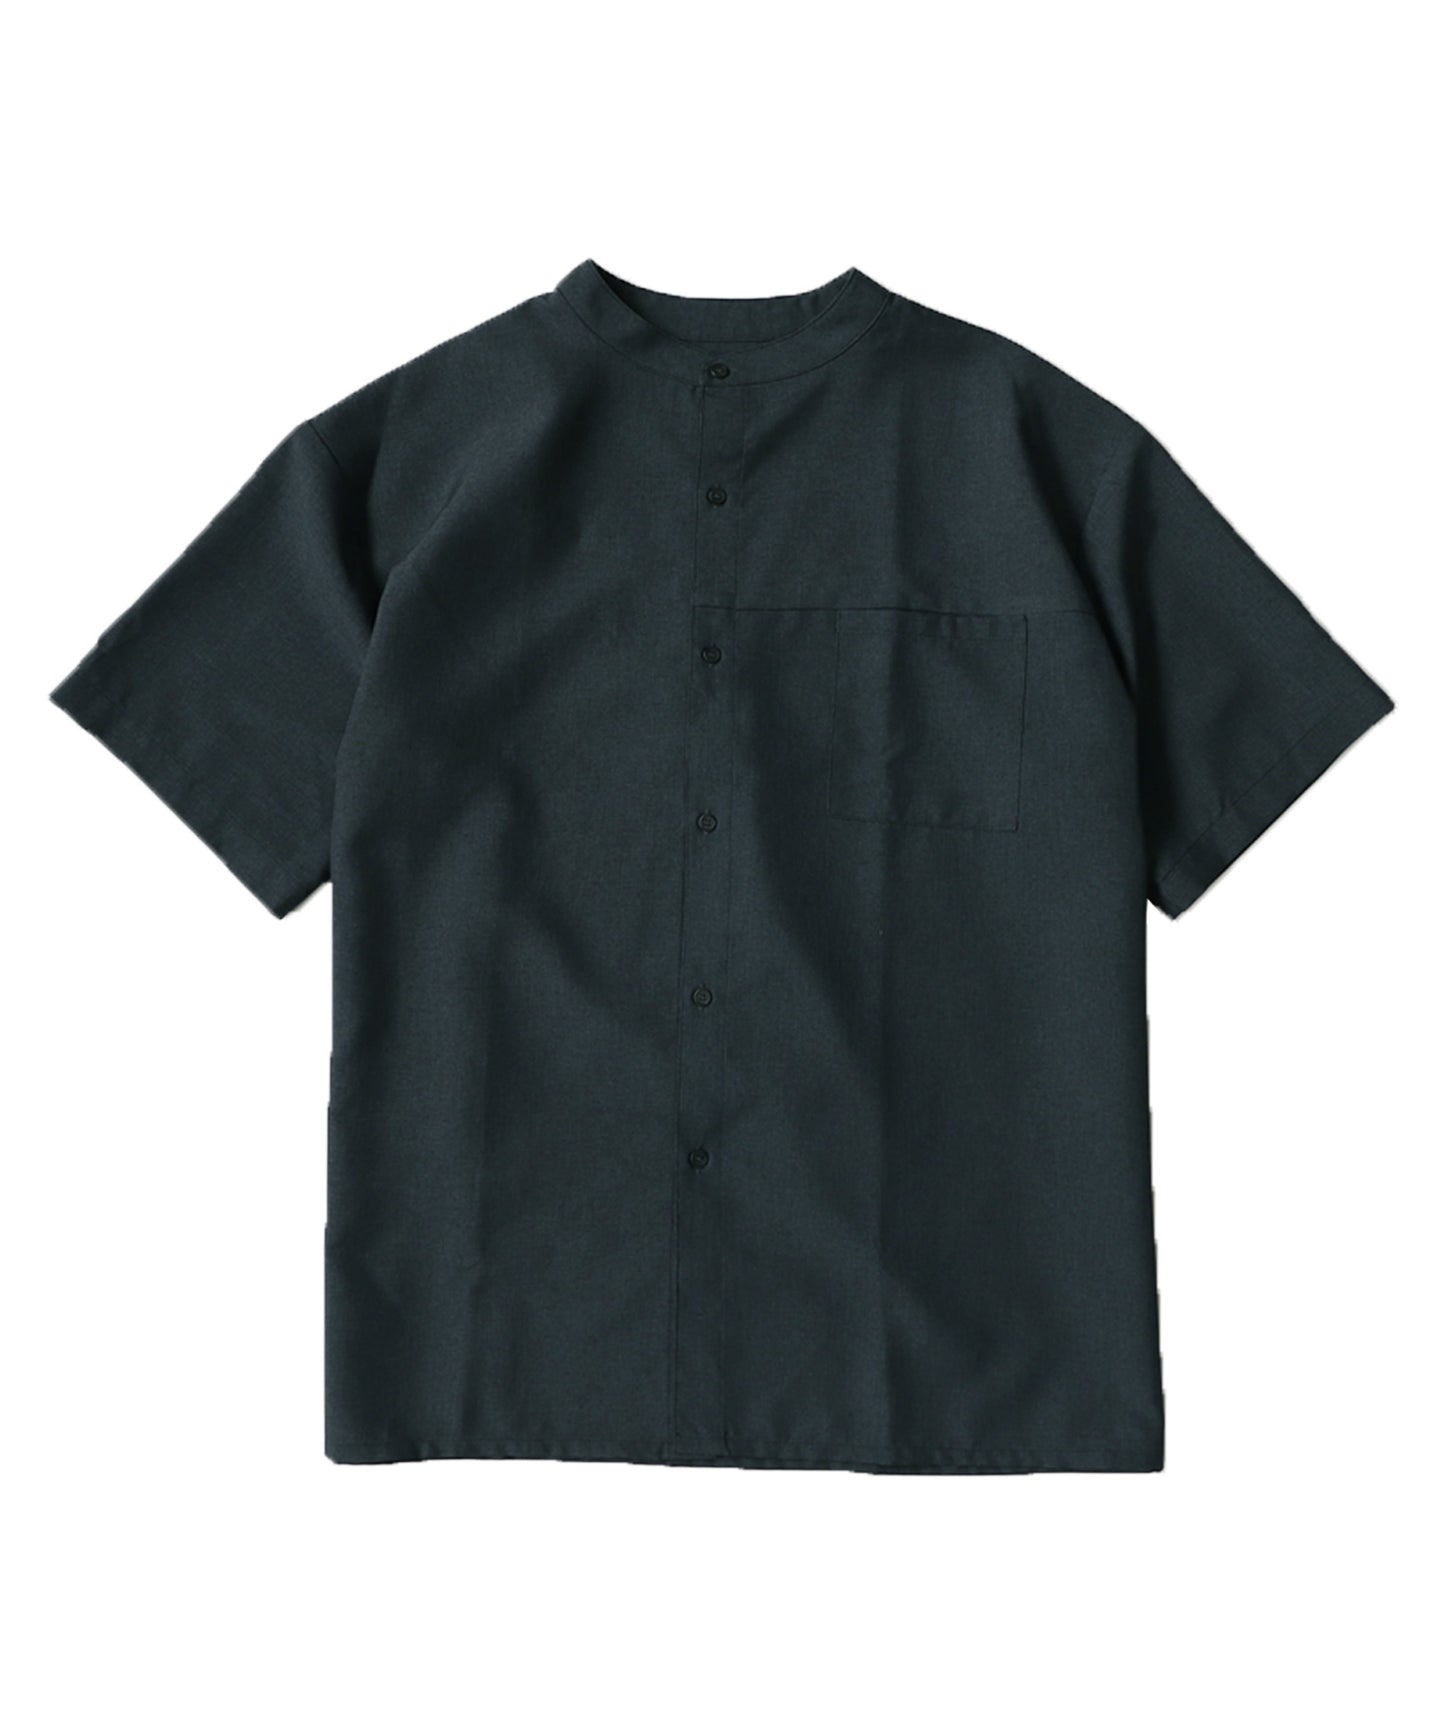 Linen Likes Men's Shirt Men's Tops Short-Sleeve Plain